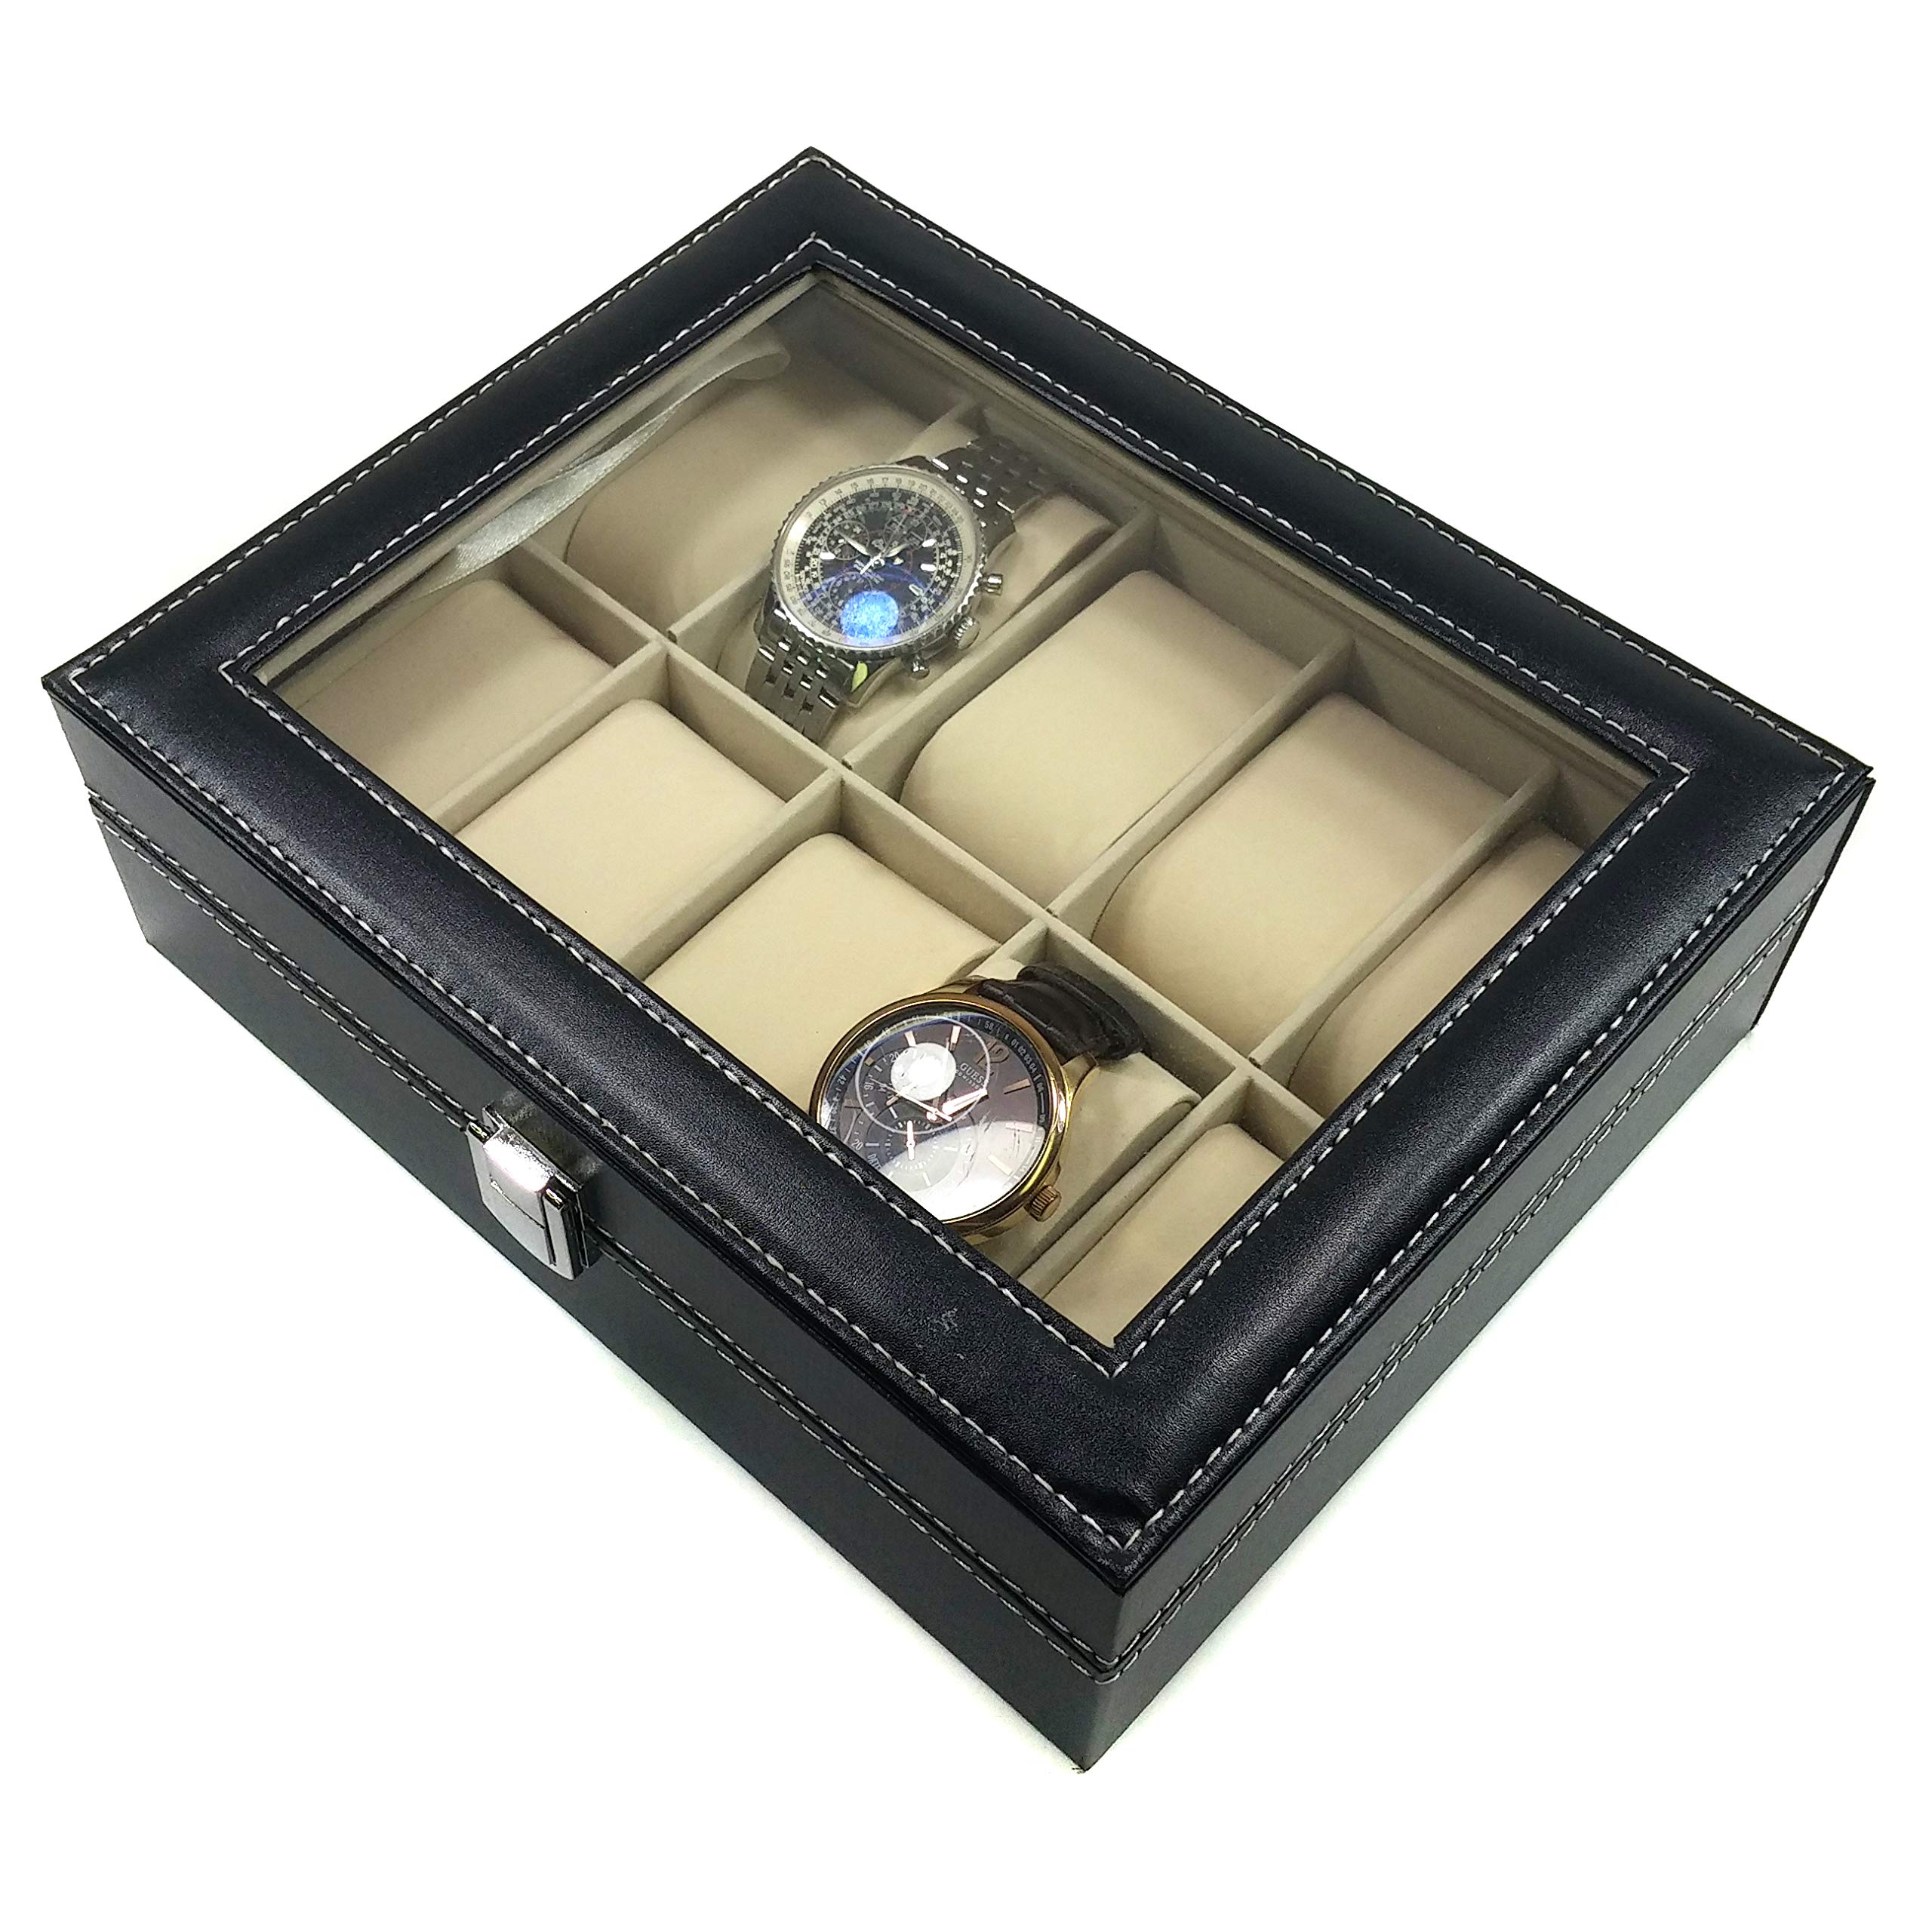 Science Purchase 78AMZN10GRID- Wild-us PU Leather 10 Grid Watch Display Box Jewelry Storage Organizer, Black with Keys